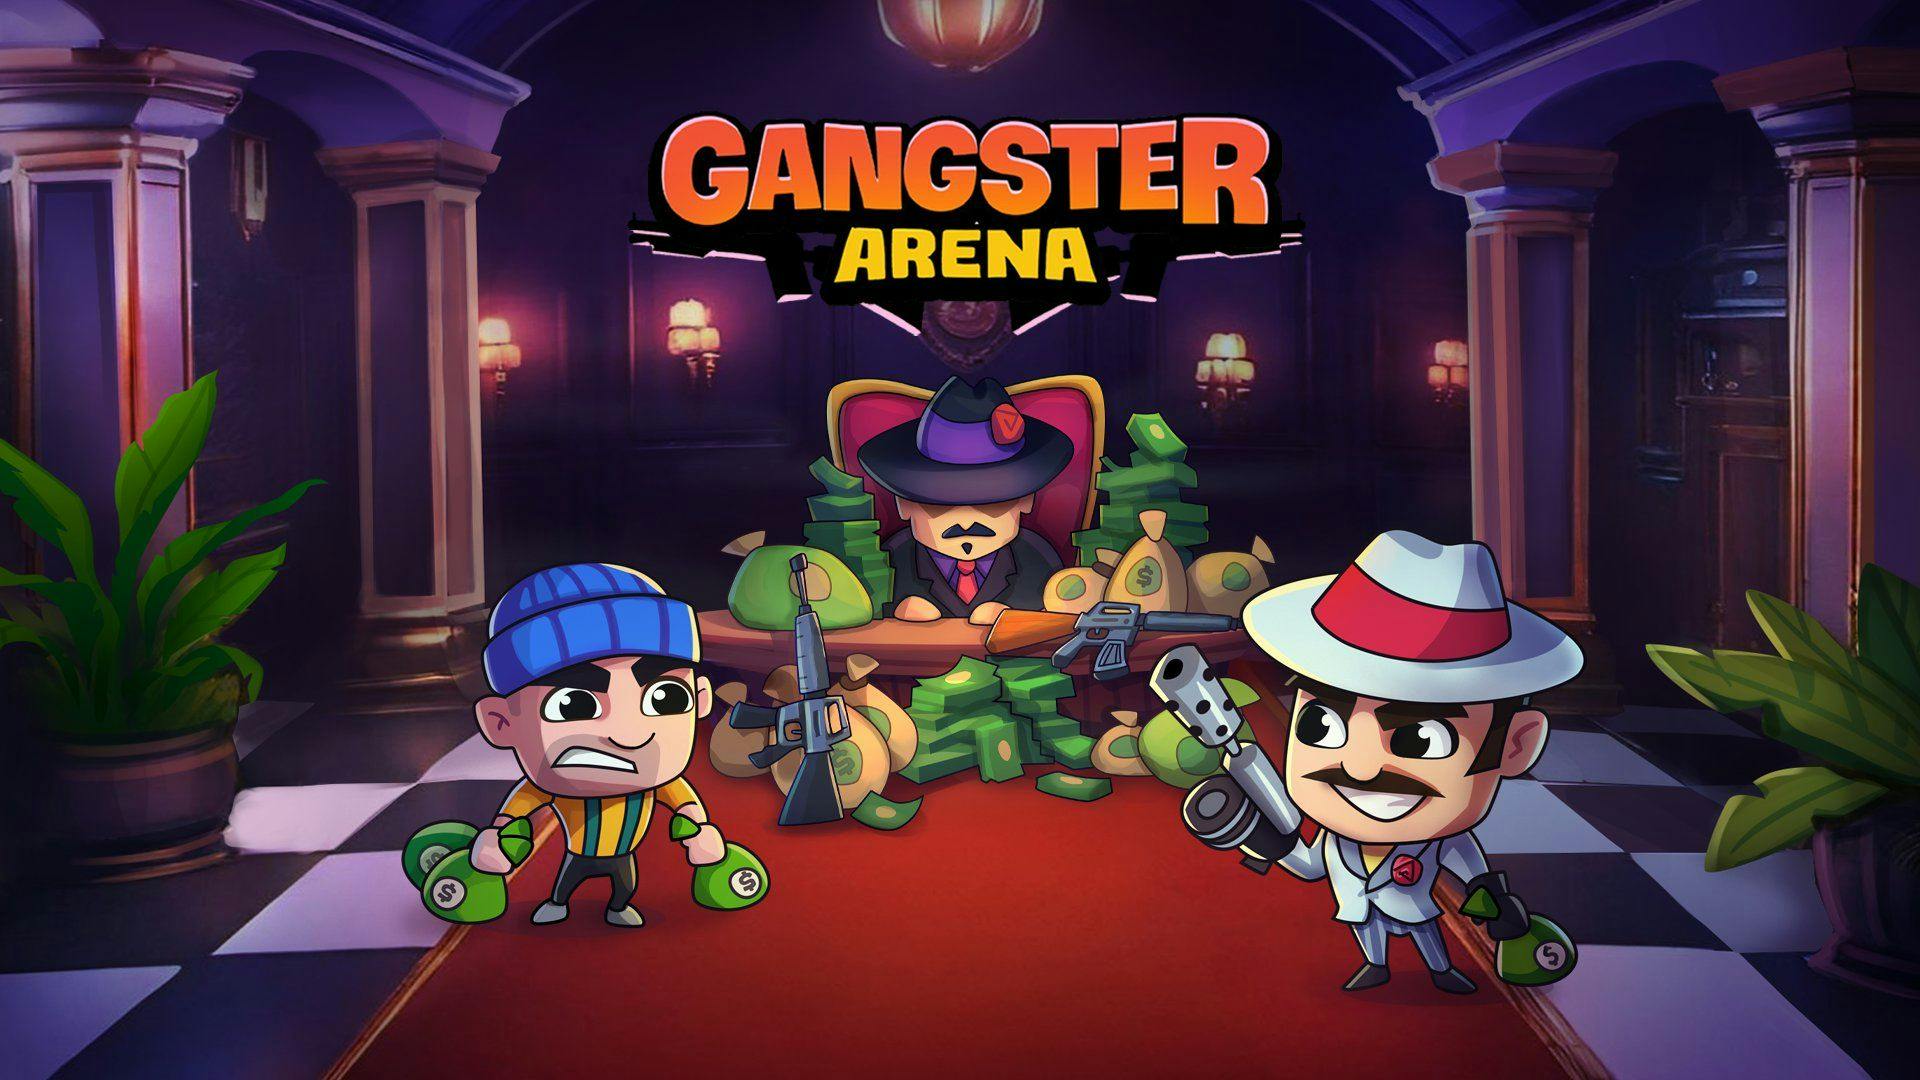 Gangster Arena game image 1.jpg